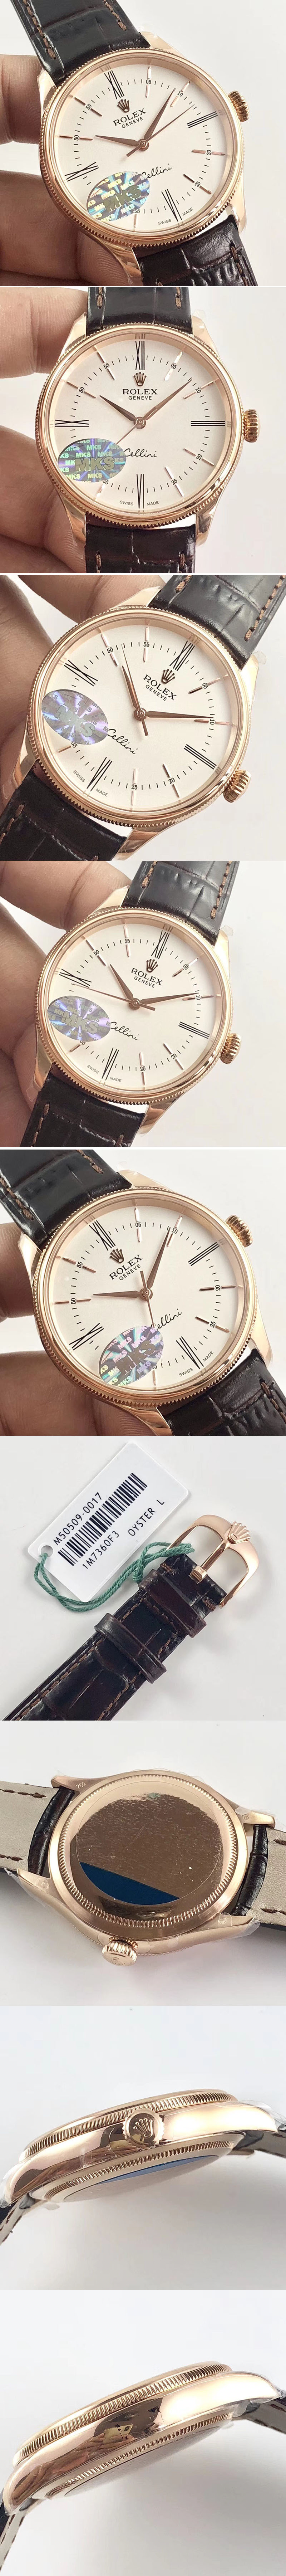 Replica Rolex Cellini Danos   Watches